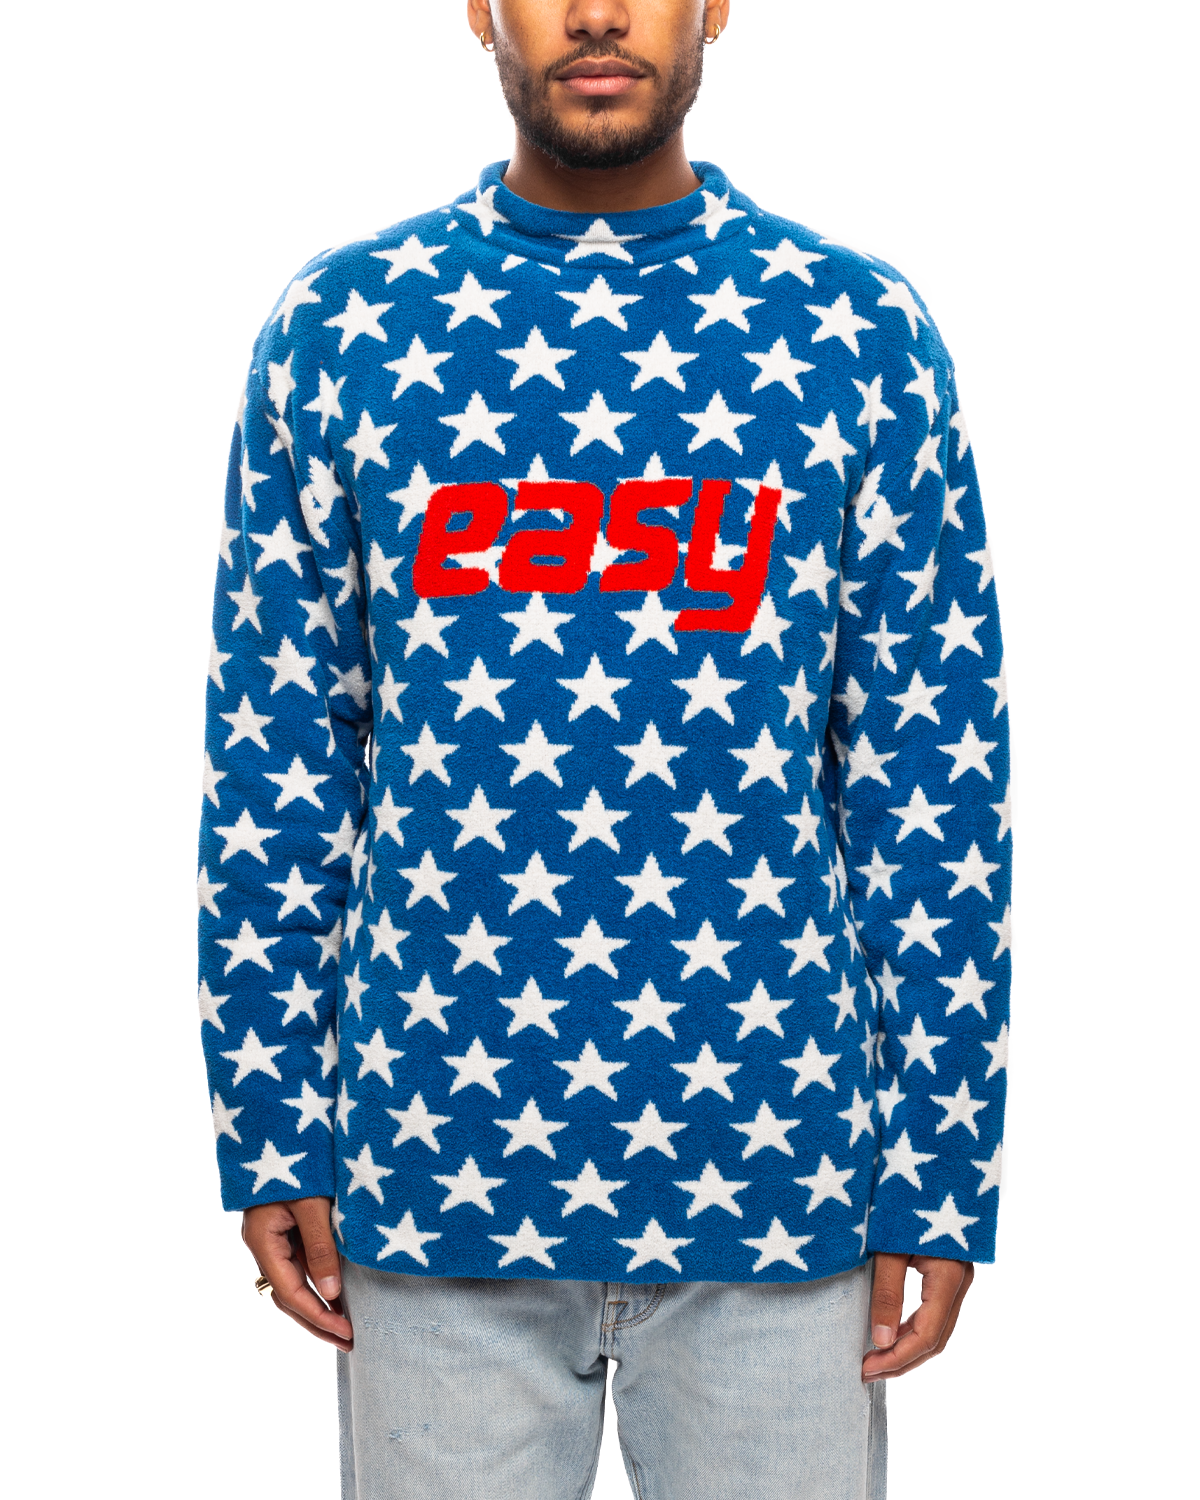 Unisex Easy Fleece Sweater Knit Blue